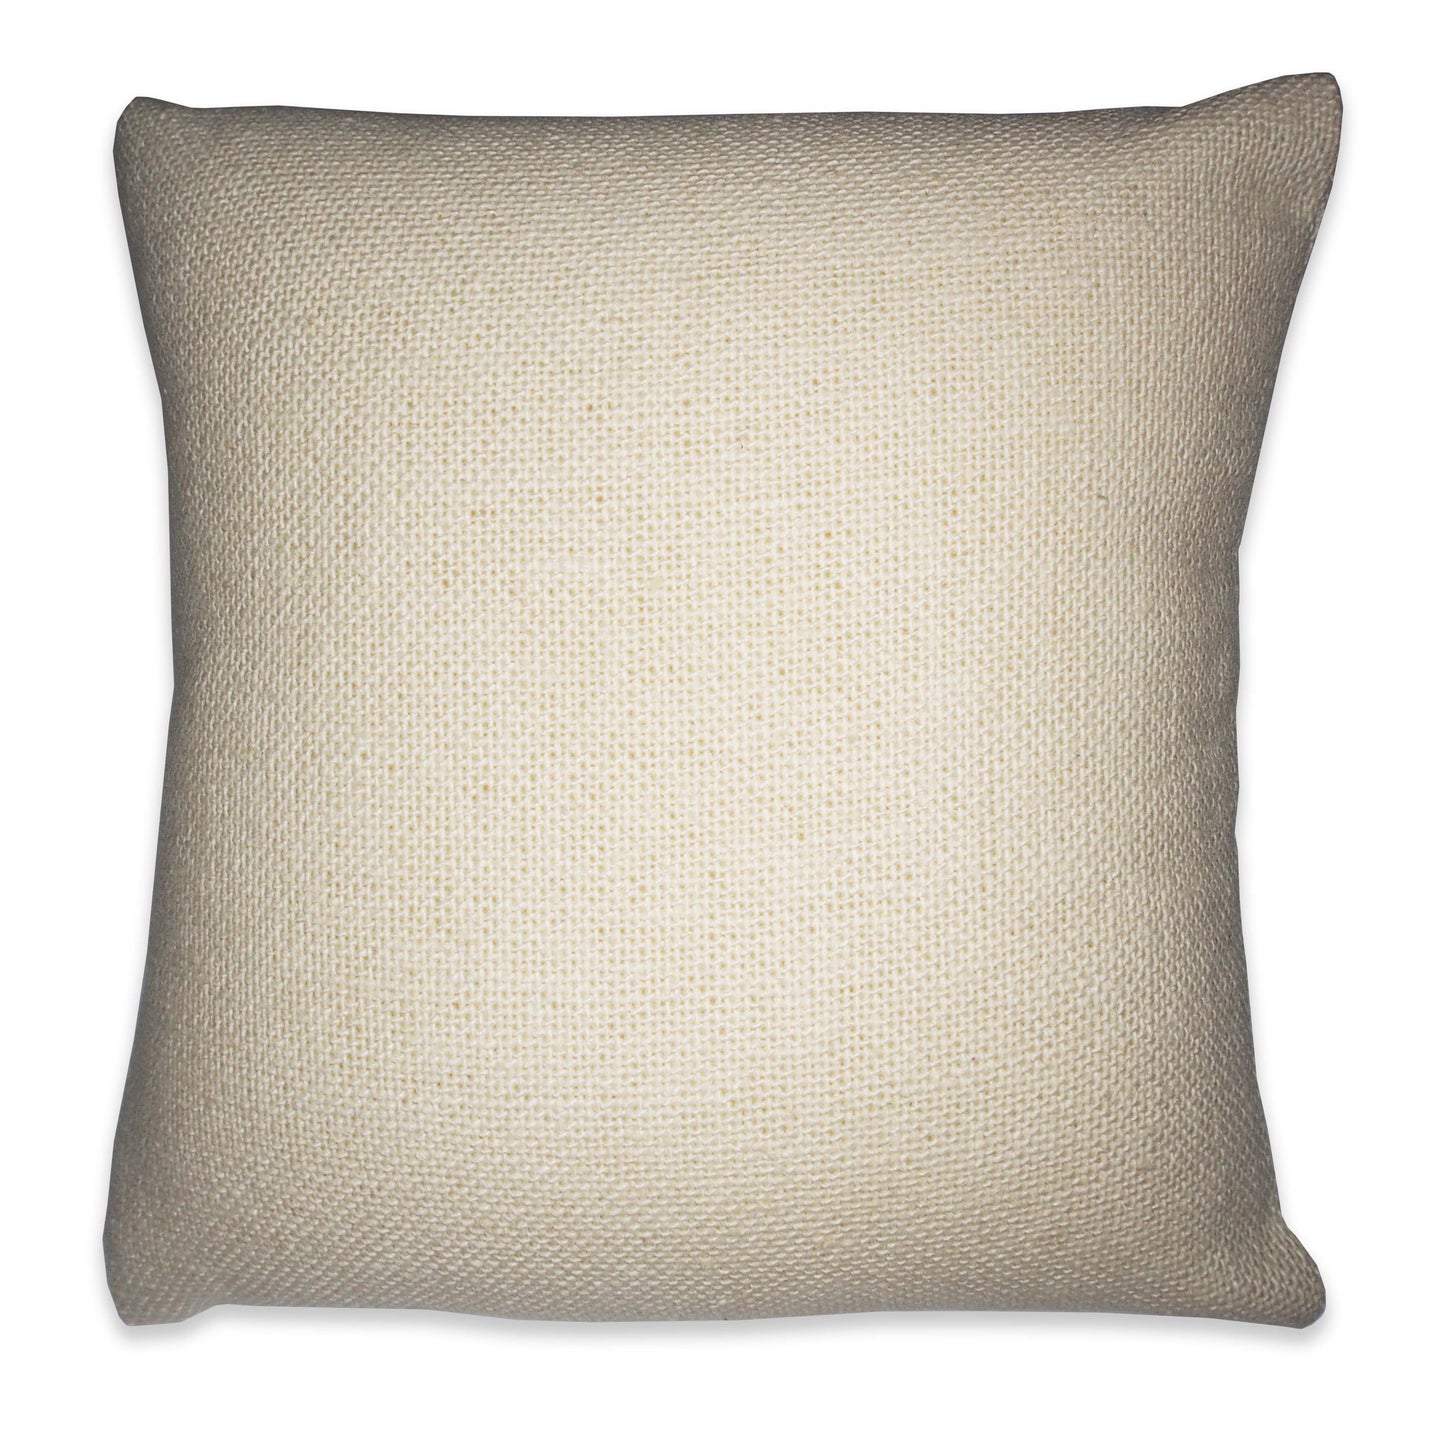 5" Beige Linen Pillow Displays